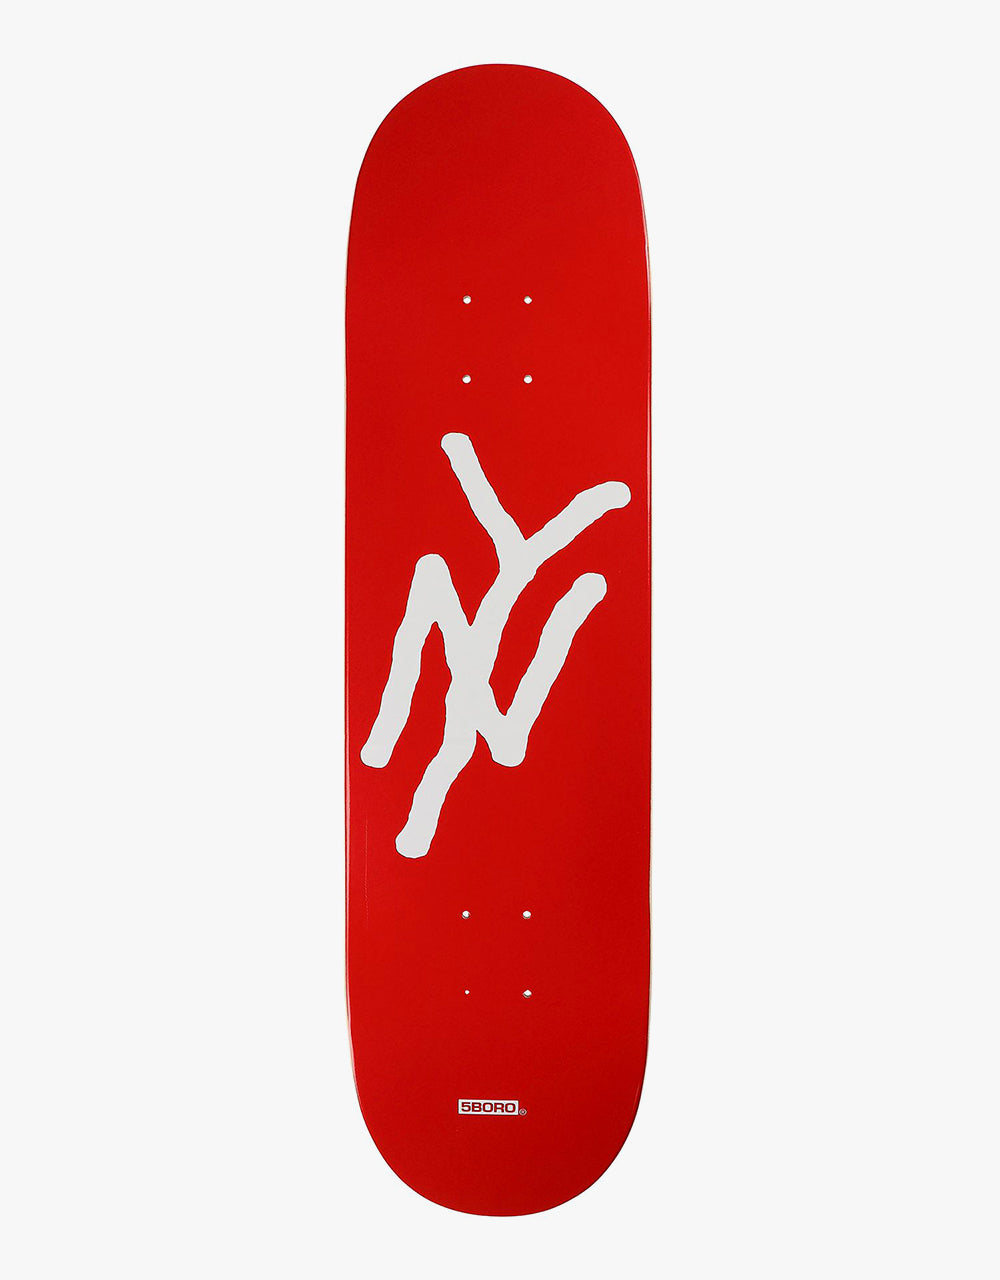 5Boro NY Monogram Skateboard Deck - 8.25"